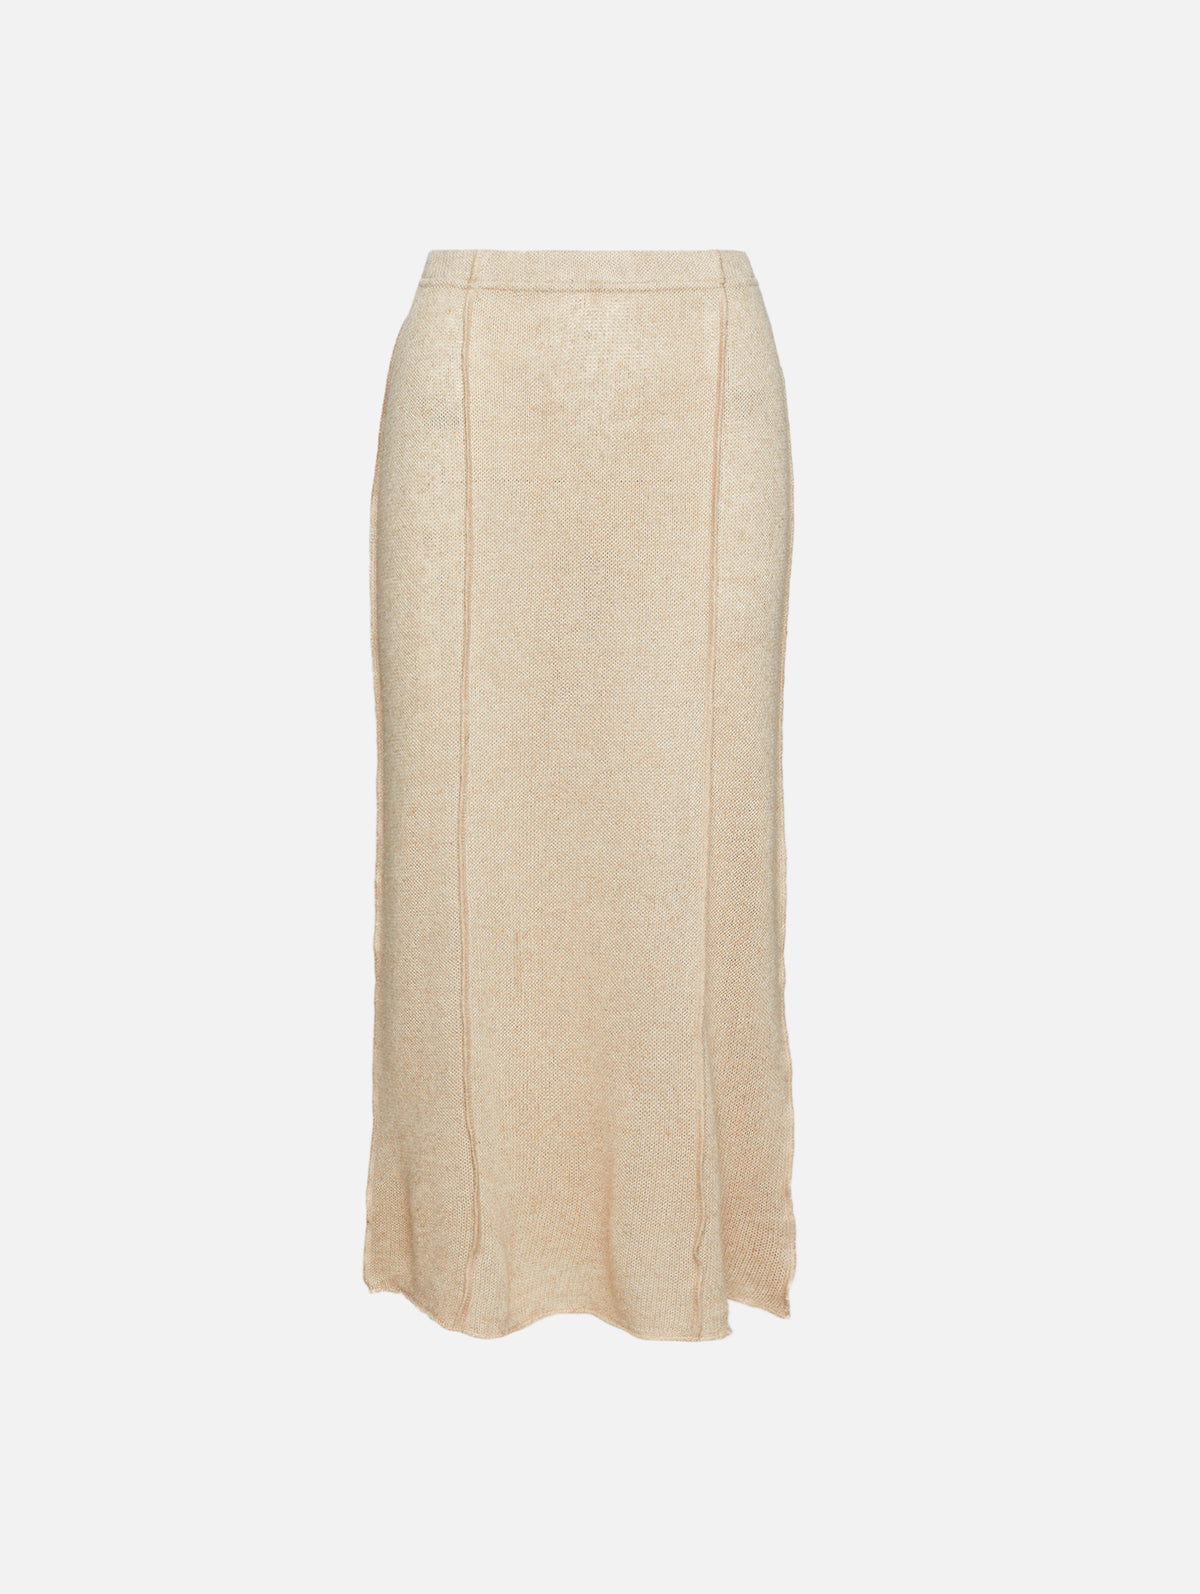 view 1 - Feri Knit Maxi Skirt